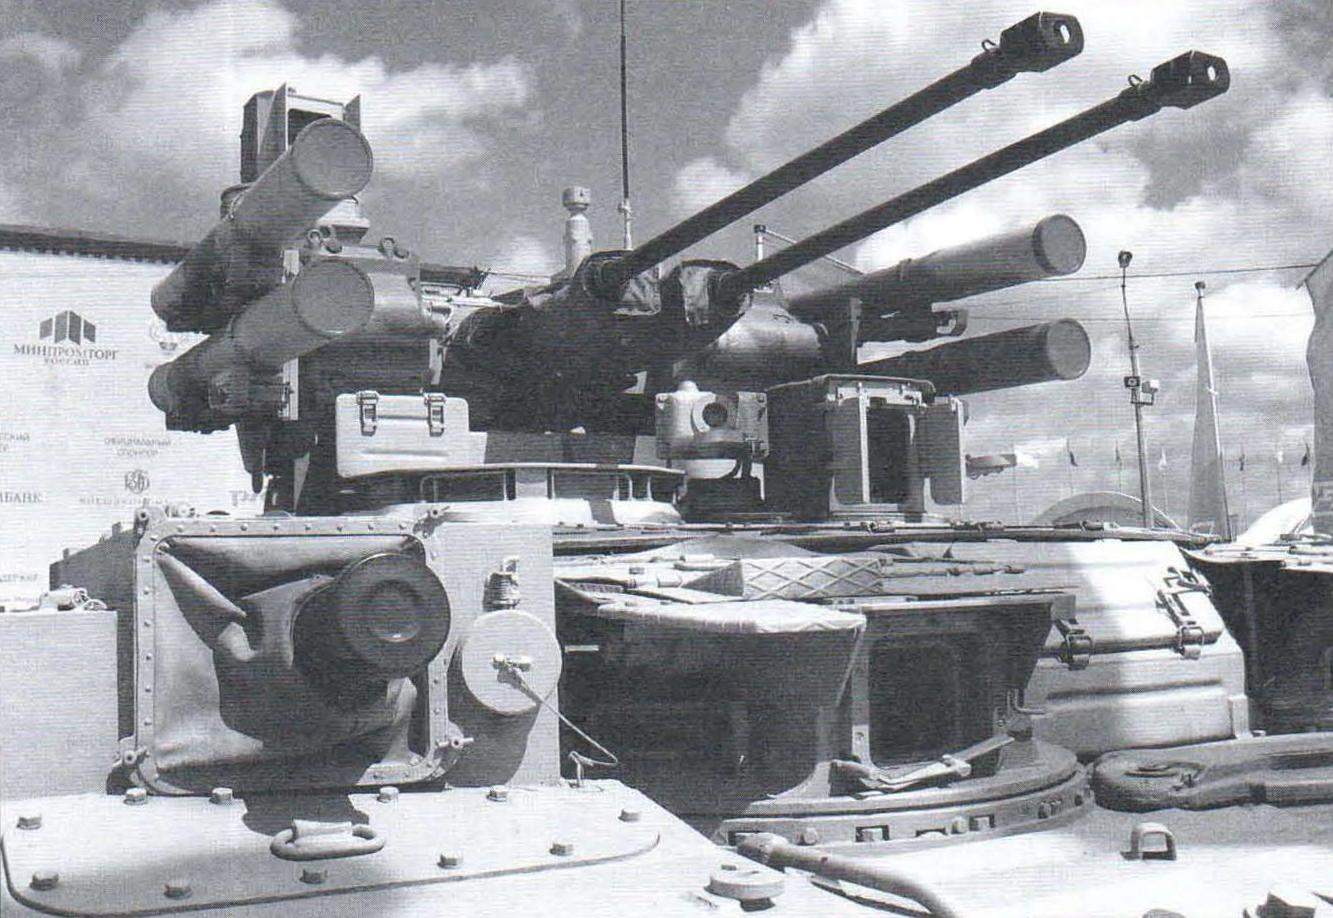 Башня БМПТ. По правому борту - гранатомёт АГ-12Д в спонсоне, справа от него - прицел ПНК-4 «Агат-МР» стрелка-гранатомётчика, выше - прицельный комплекс Б07-41 командира